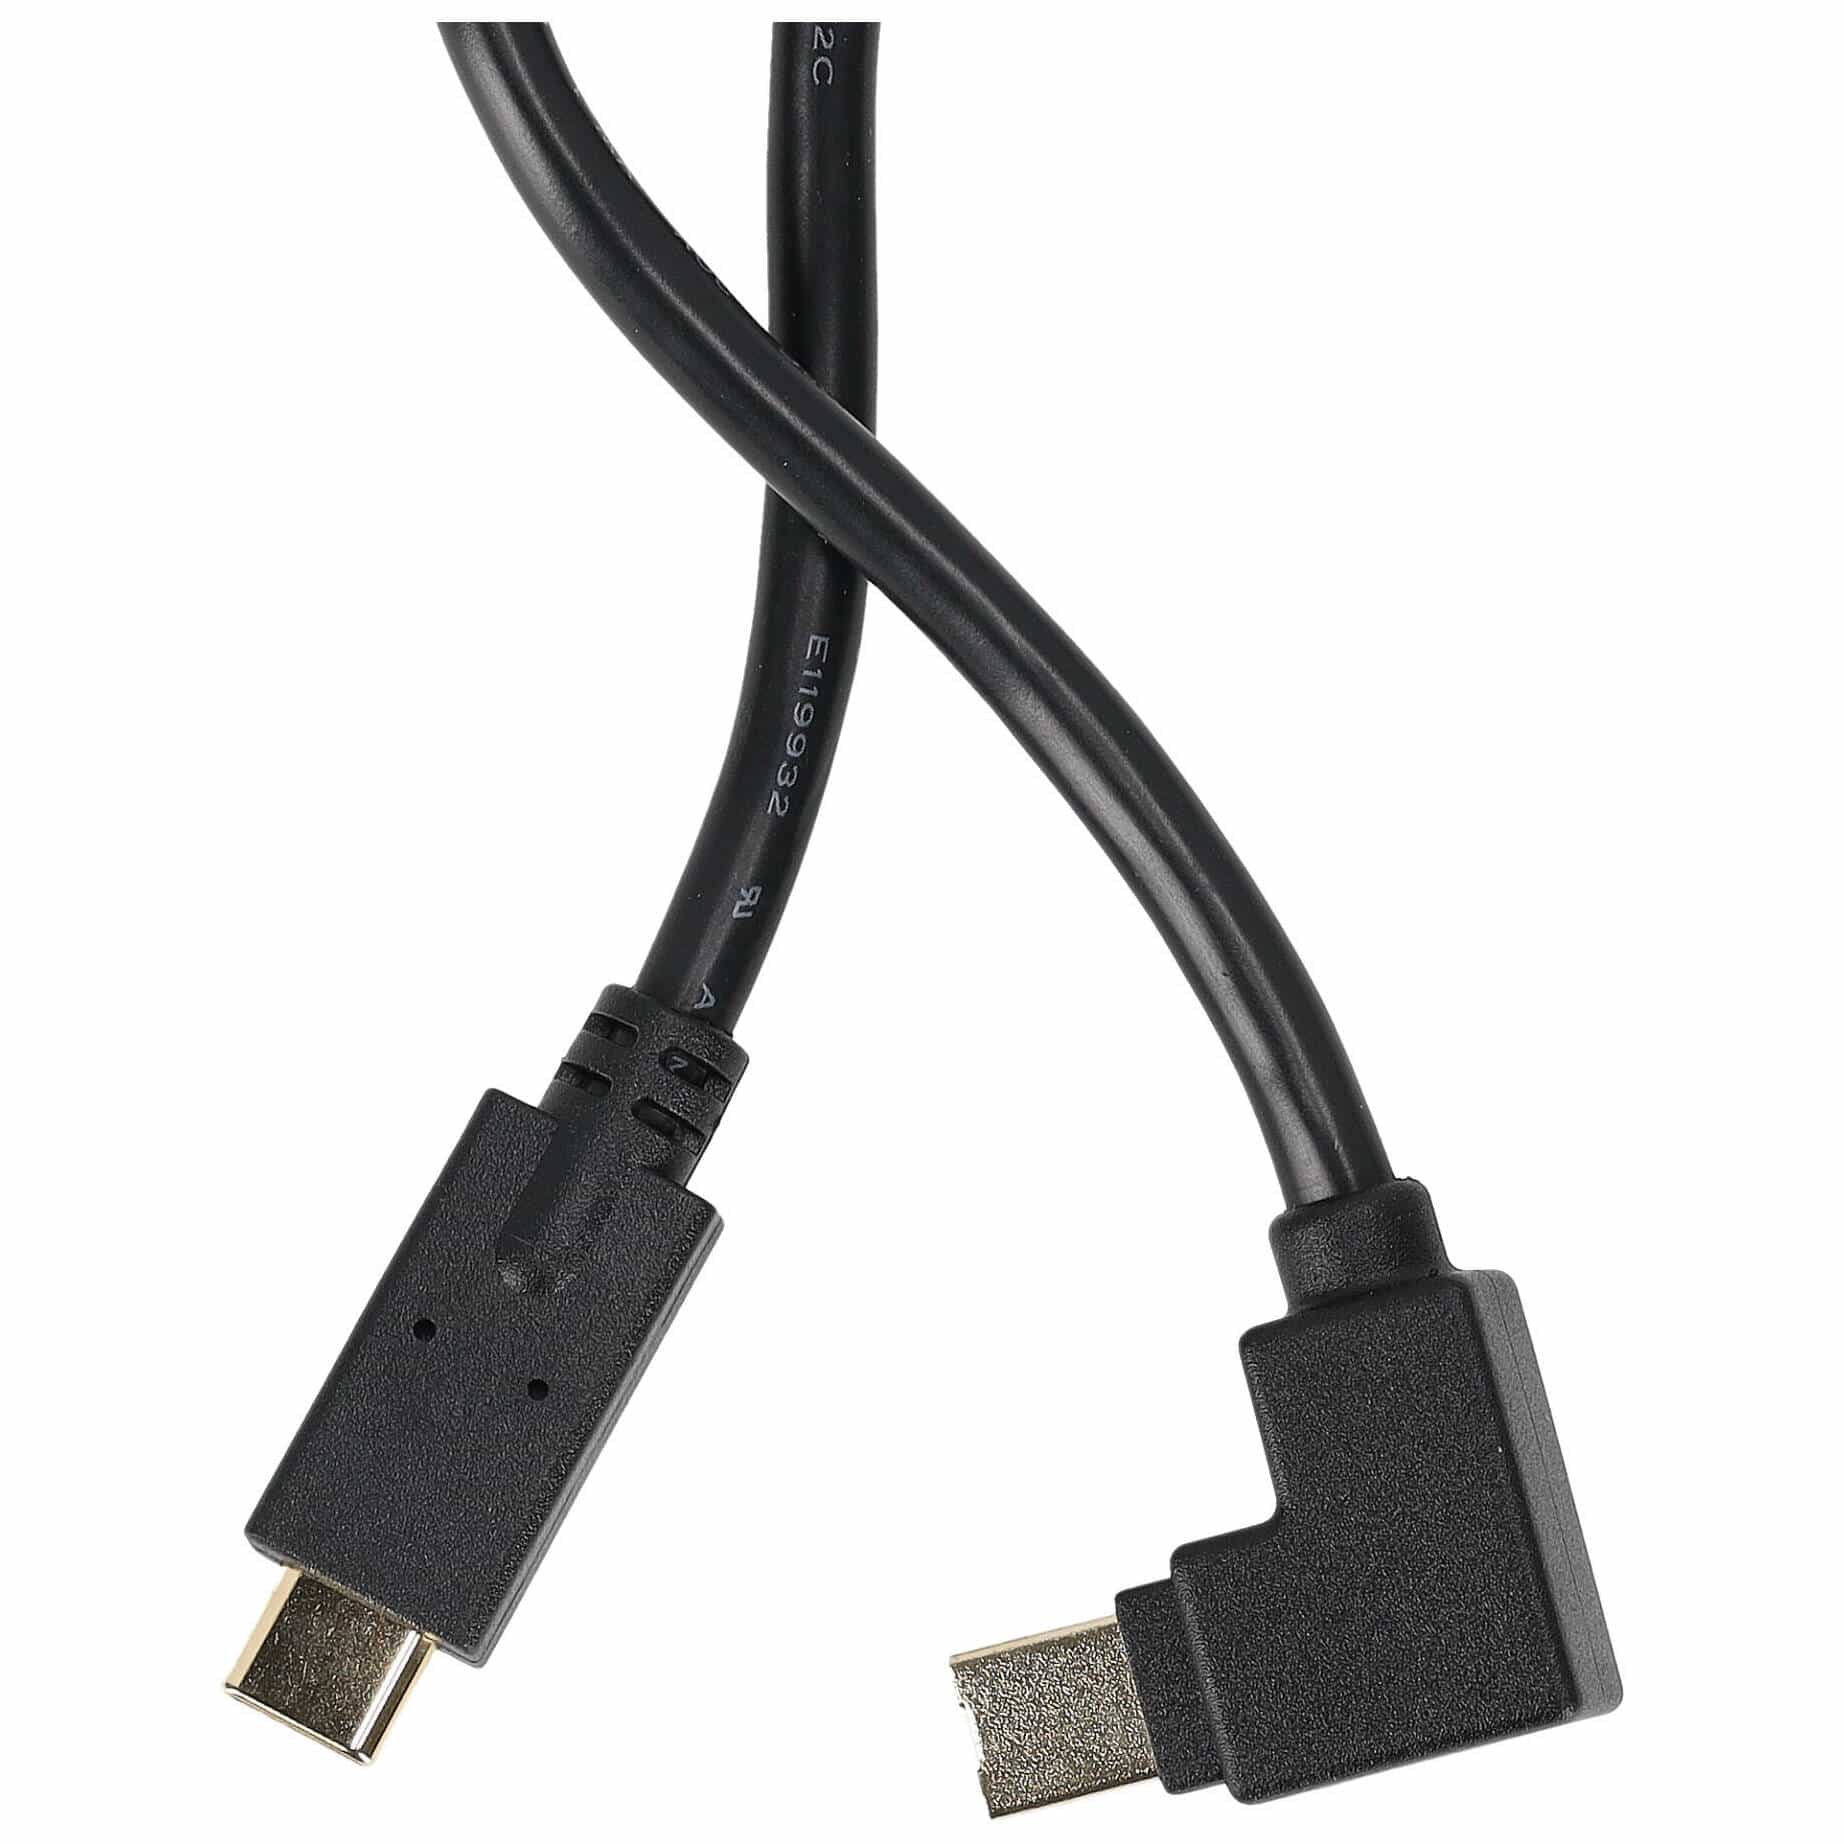 RME USB-C Kabel für Babyface Pro FS 1